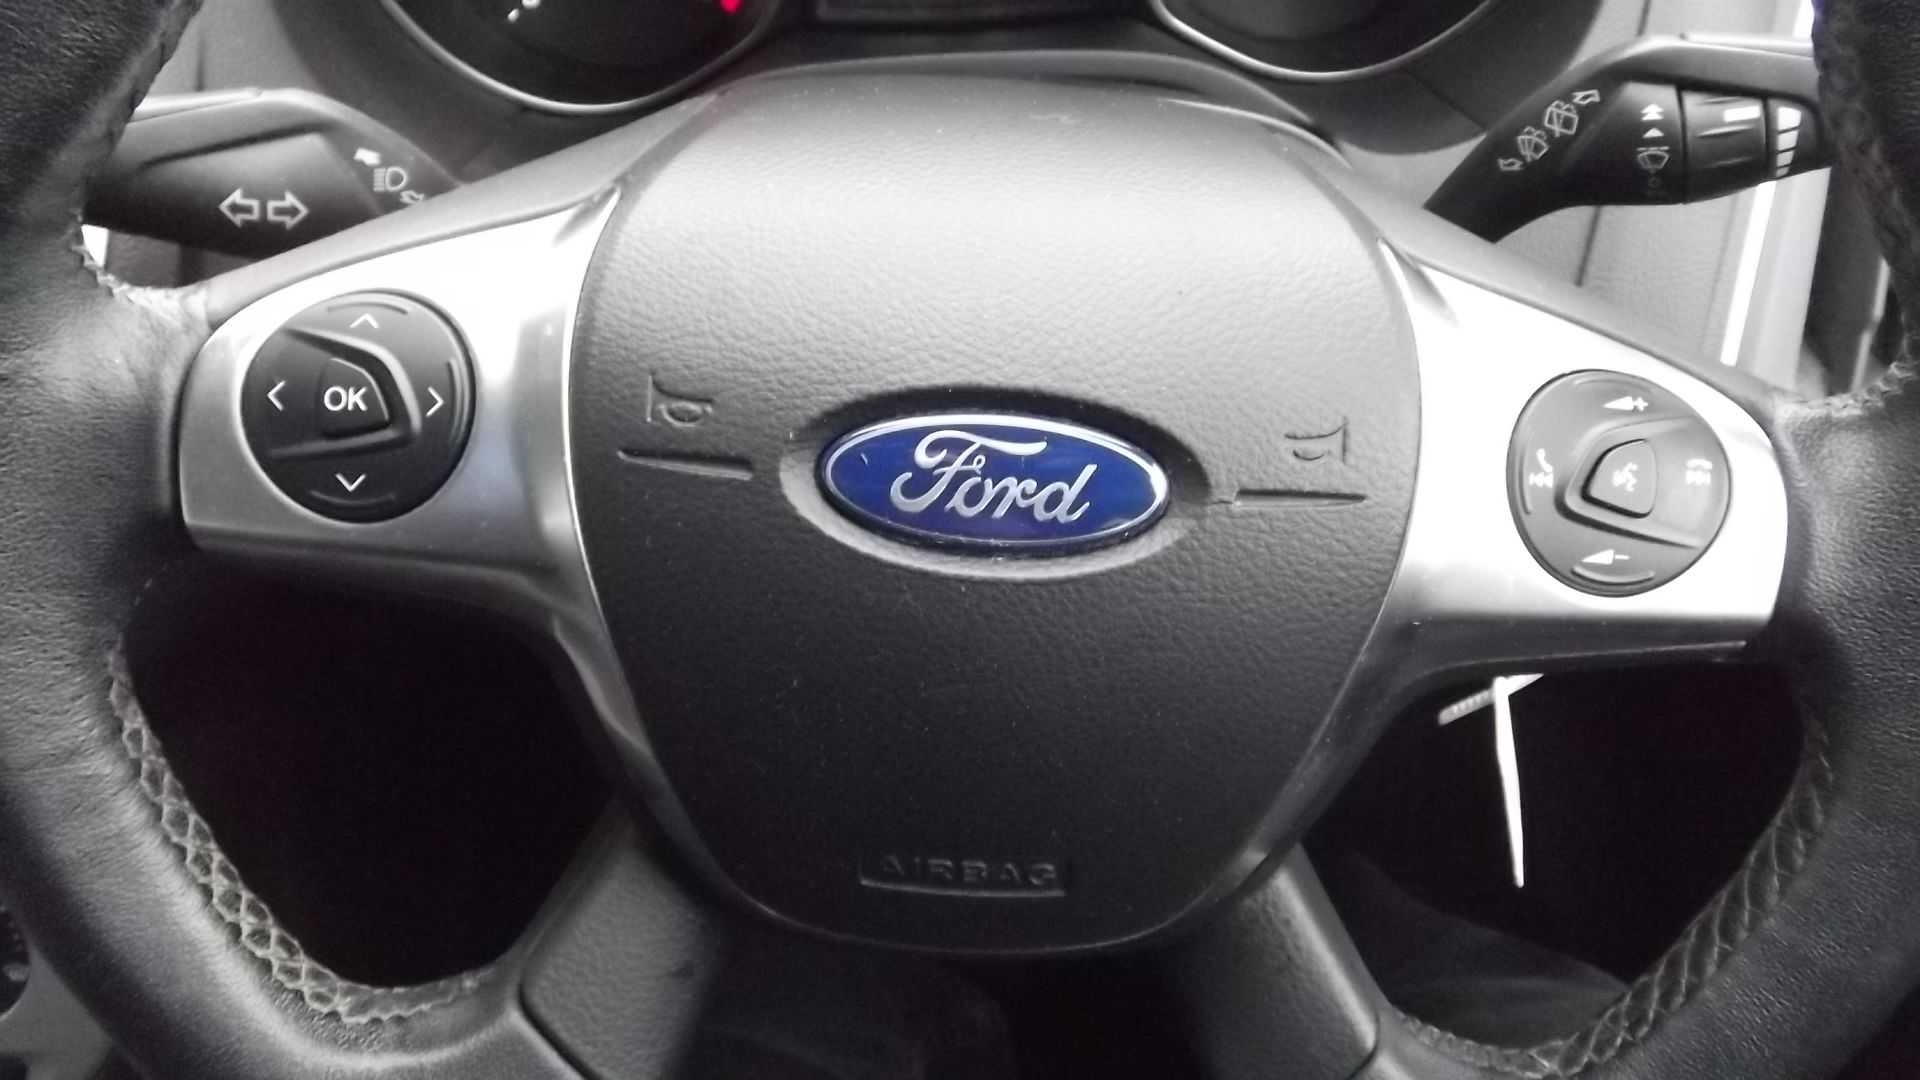 2013 Ford Focus 1.6 TDCi 115 Zetec 5dr Hatchback - Full Service History - CL505 - NO VAT ON THE HAMM - Image 16 of 21